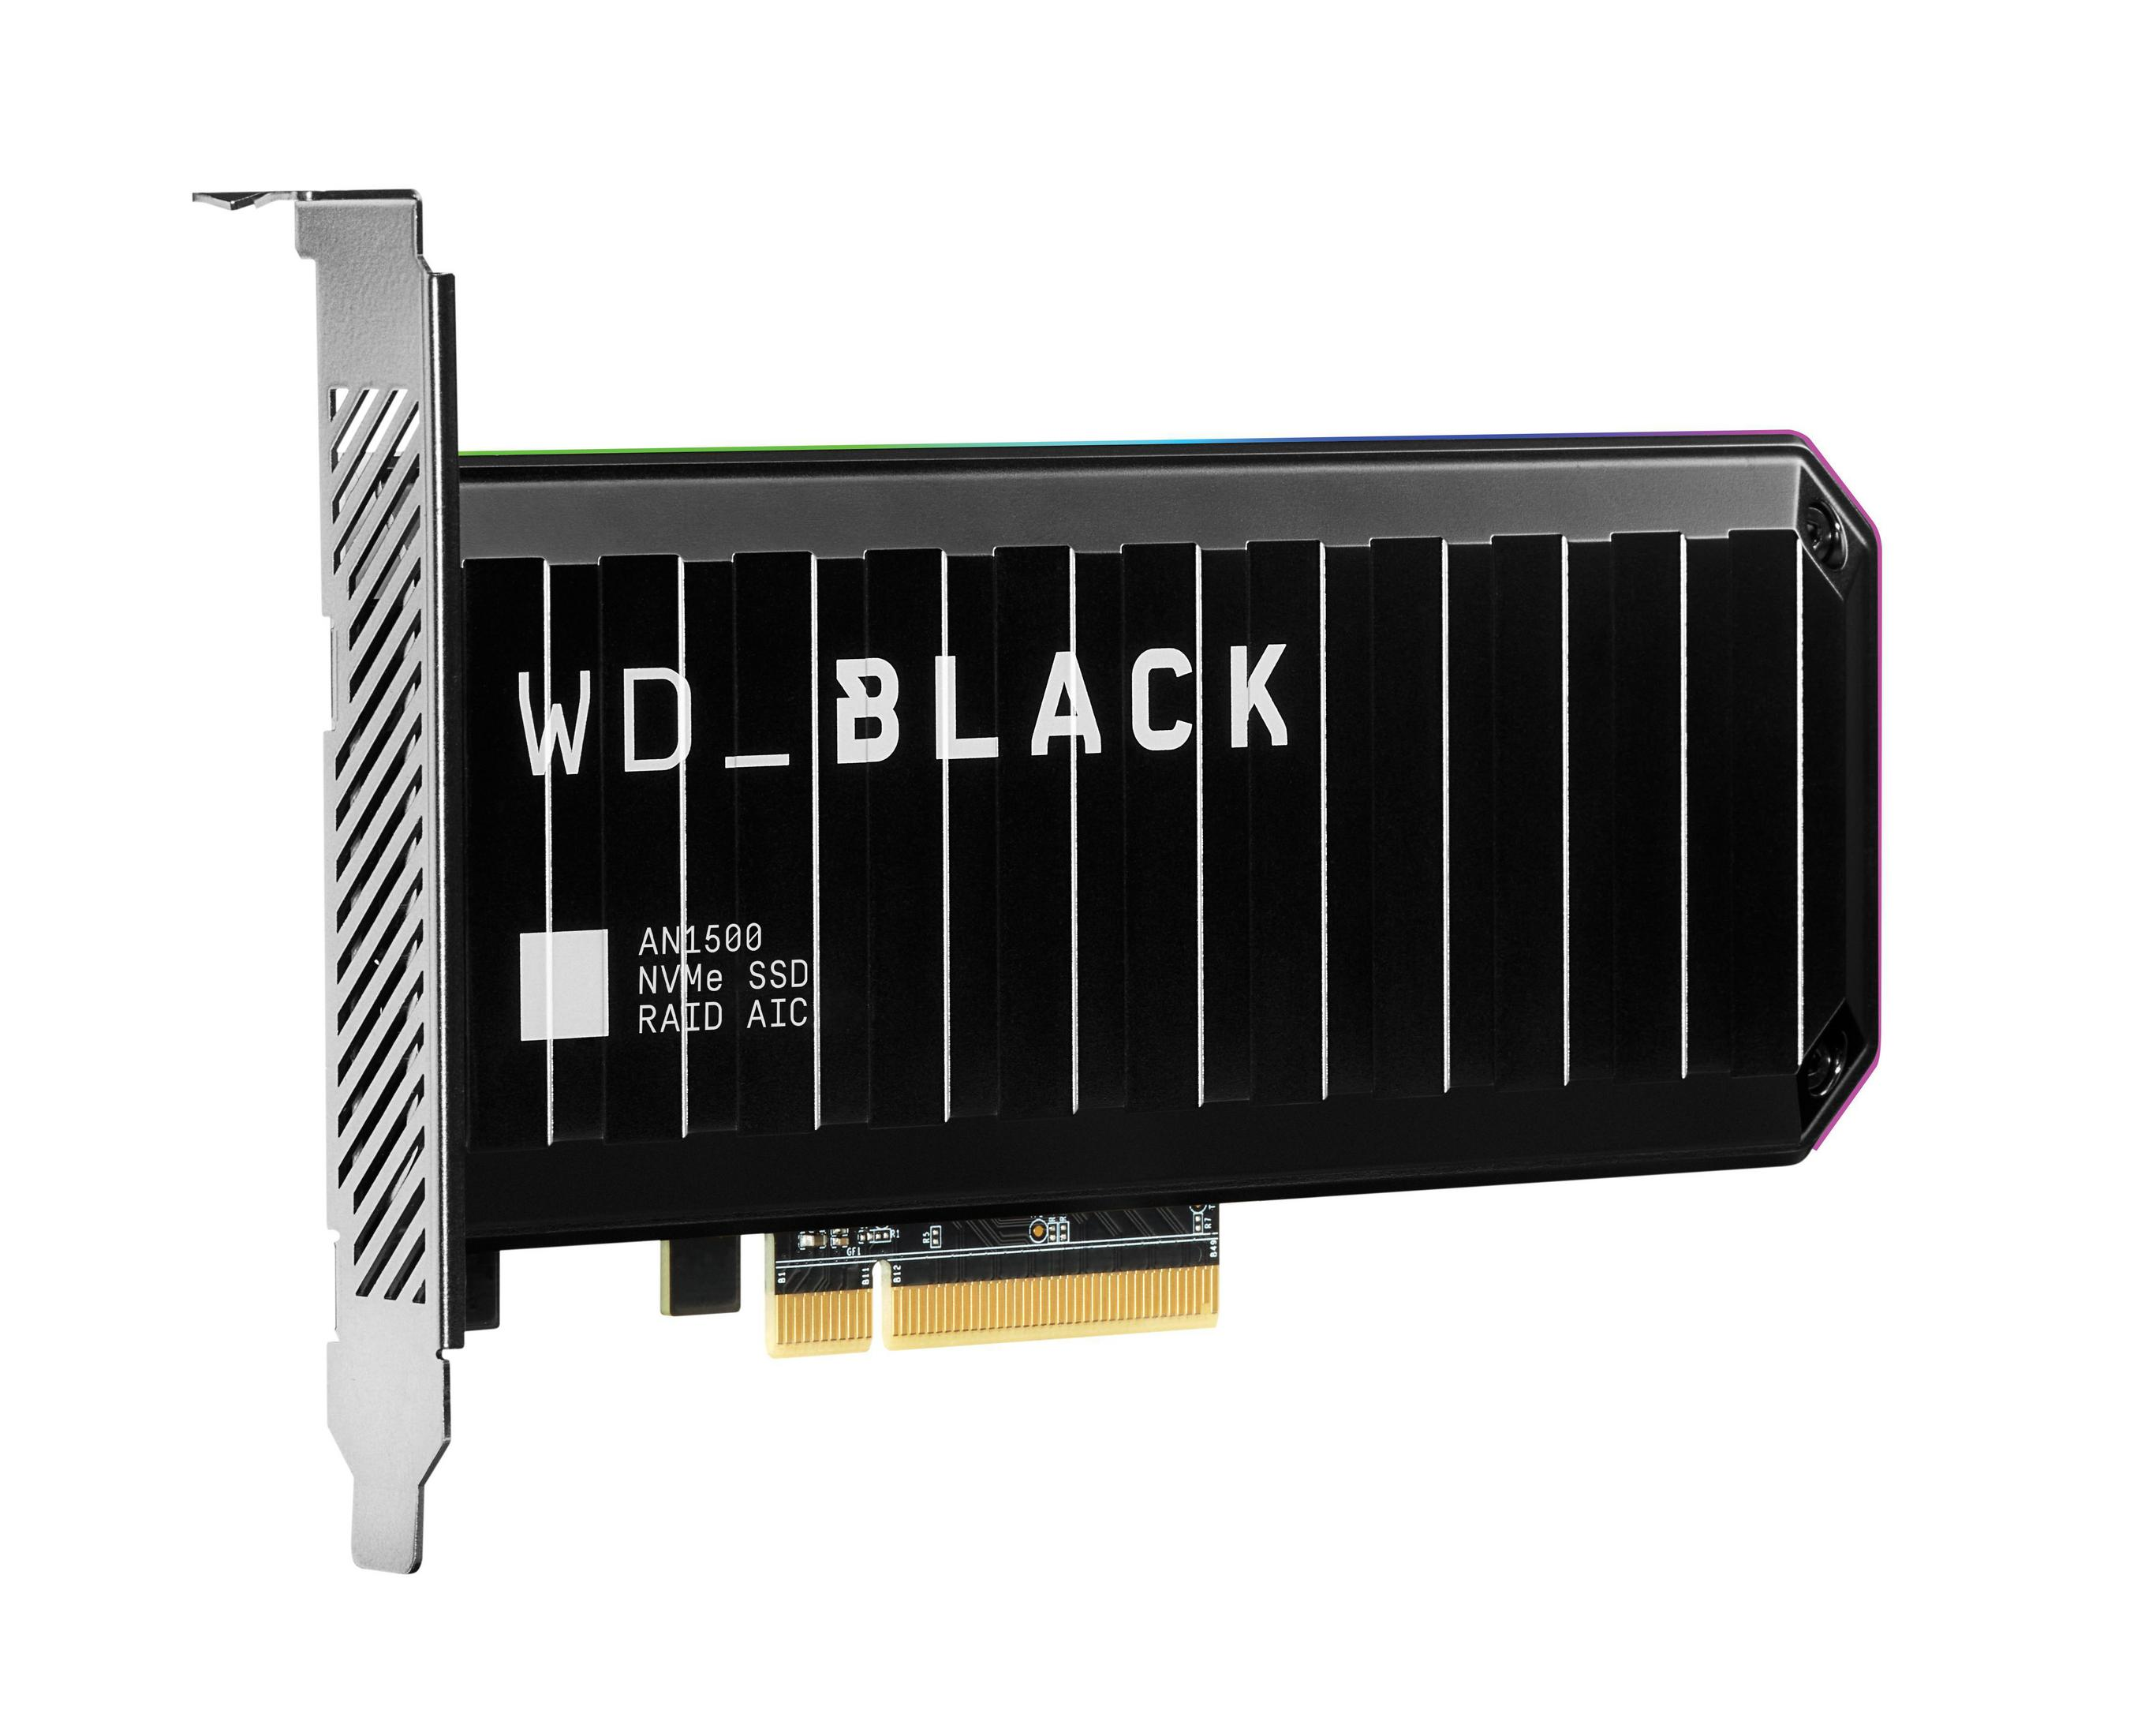 WD WDS100T1X0L WD BLACK AN1500 1TB, 1 TB, intern SSD, PCIE